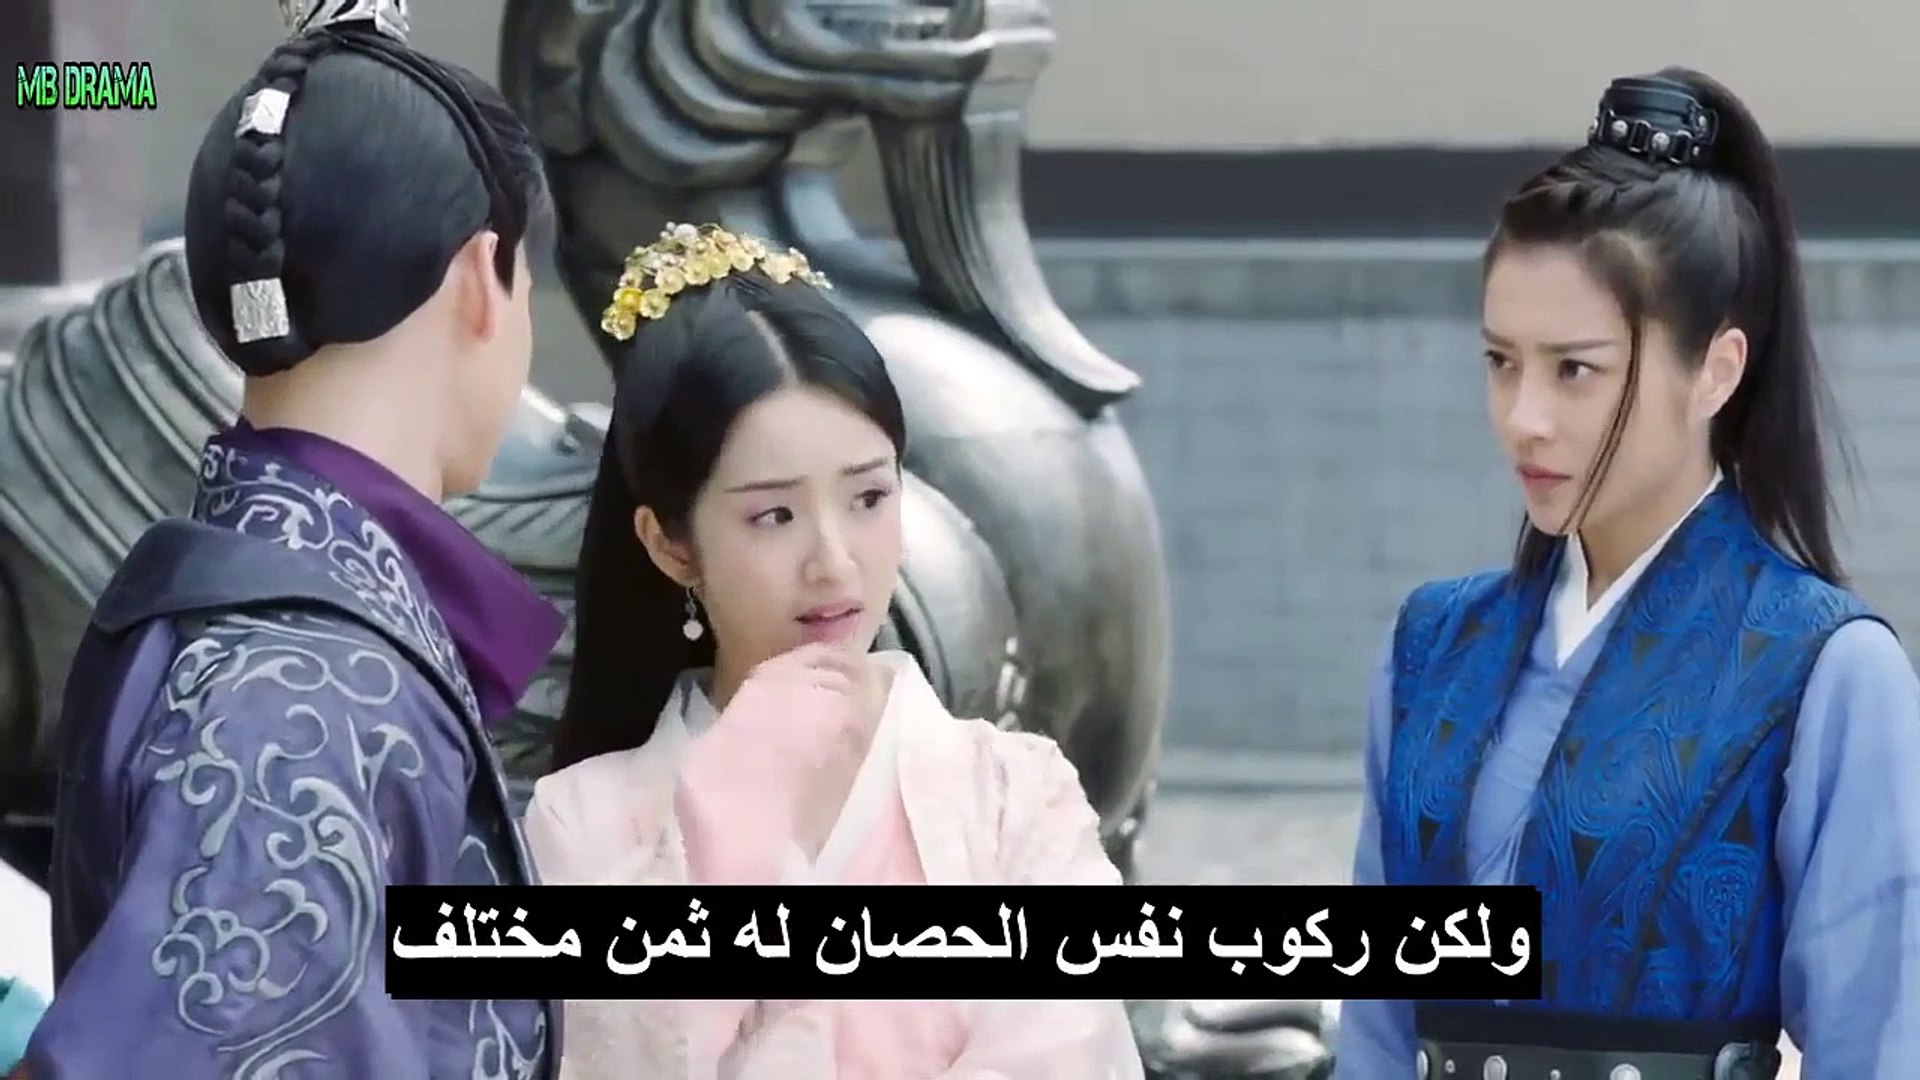 الأمير لان لينغ الحلقة 4 مترجمة جاونتر آسيا شو